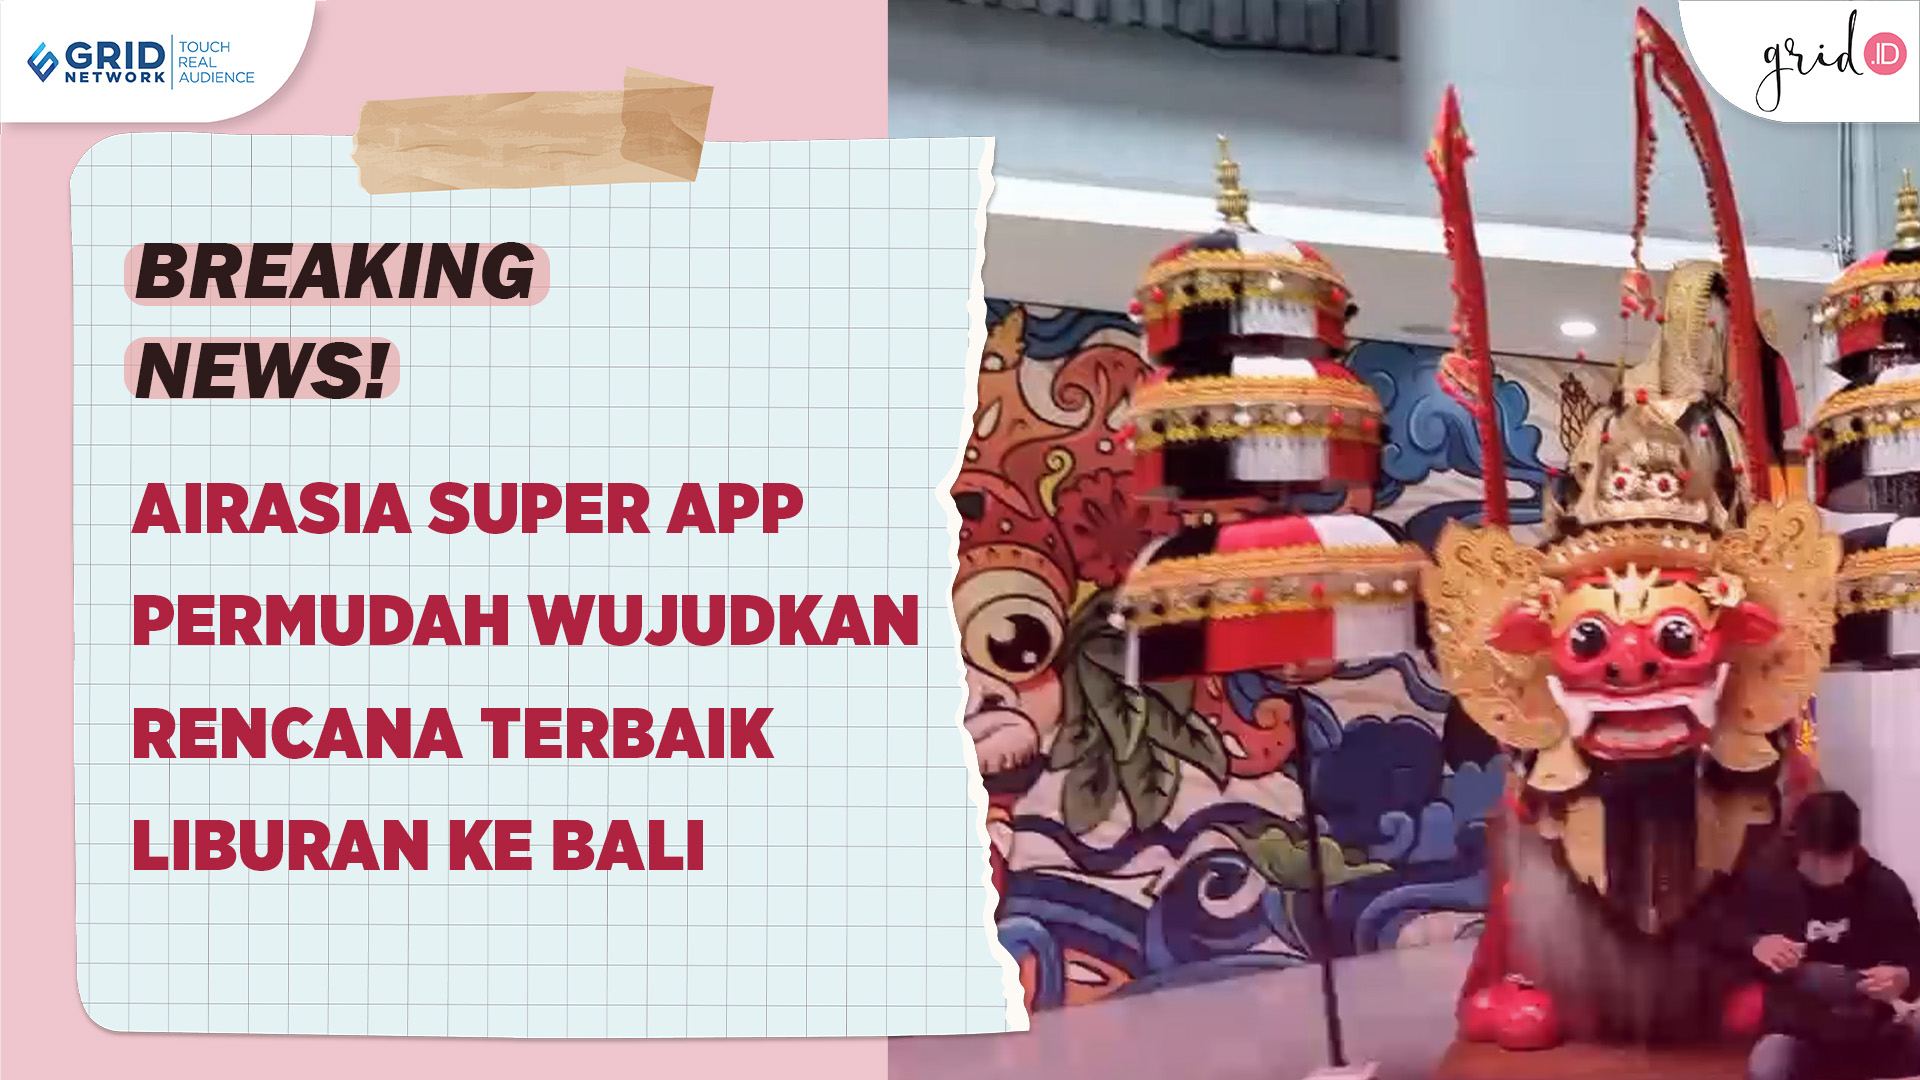 Grid.ID Kembali ke Jakarta Setelah 3 Hari di Bali Bareng AirAsia Super App